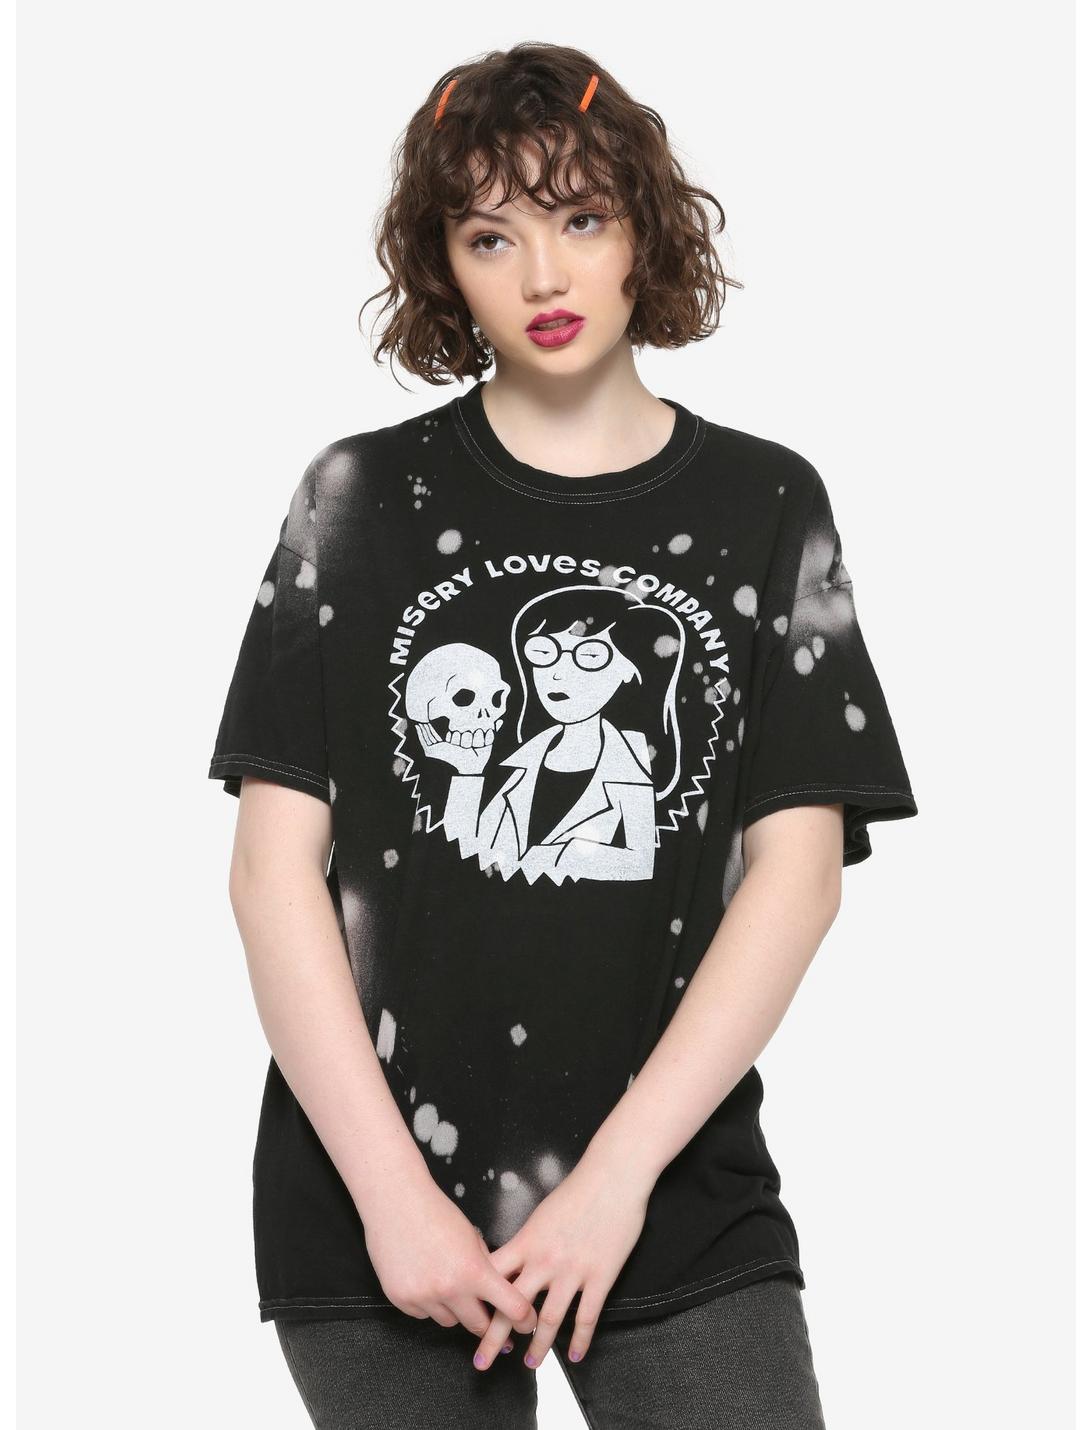 Daria Misery Loves Company Bleach Splatter Girls T-Shirt, WHITE, hi-res